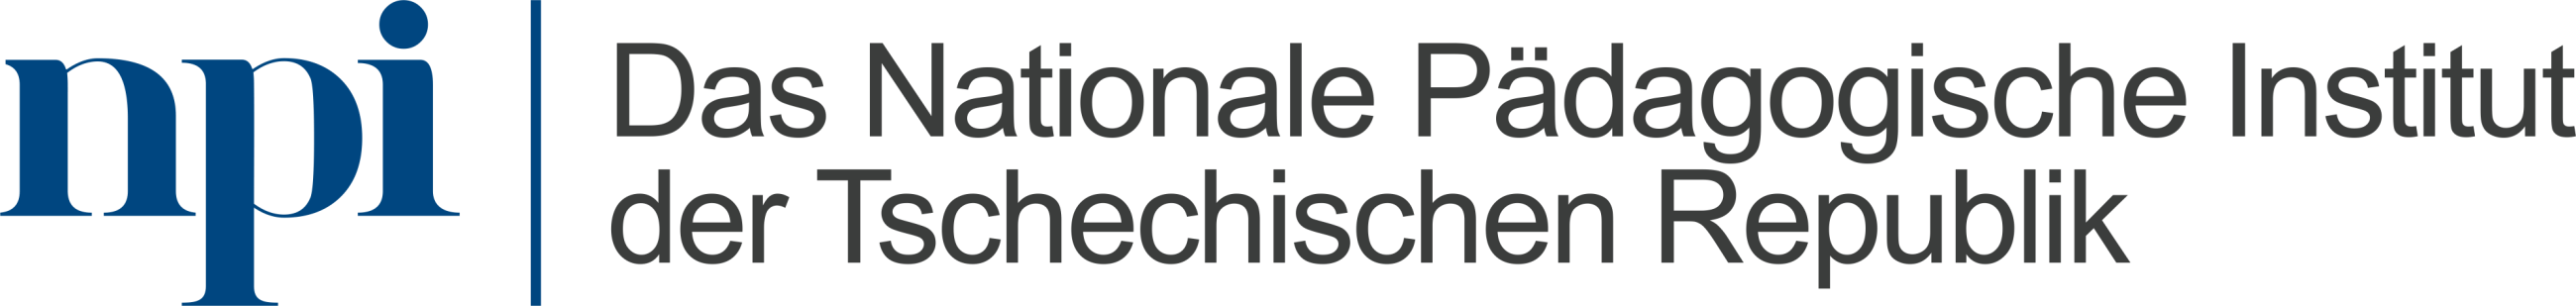 Das Nationale Pädagogische Institut der Tschechischen Republik